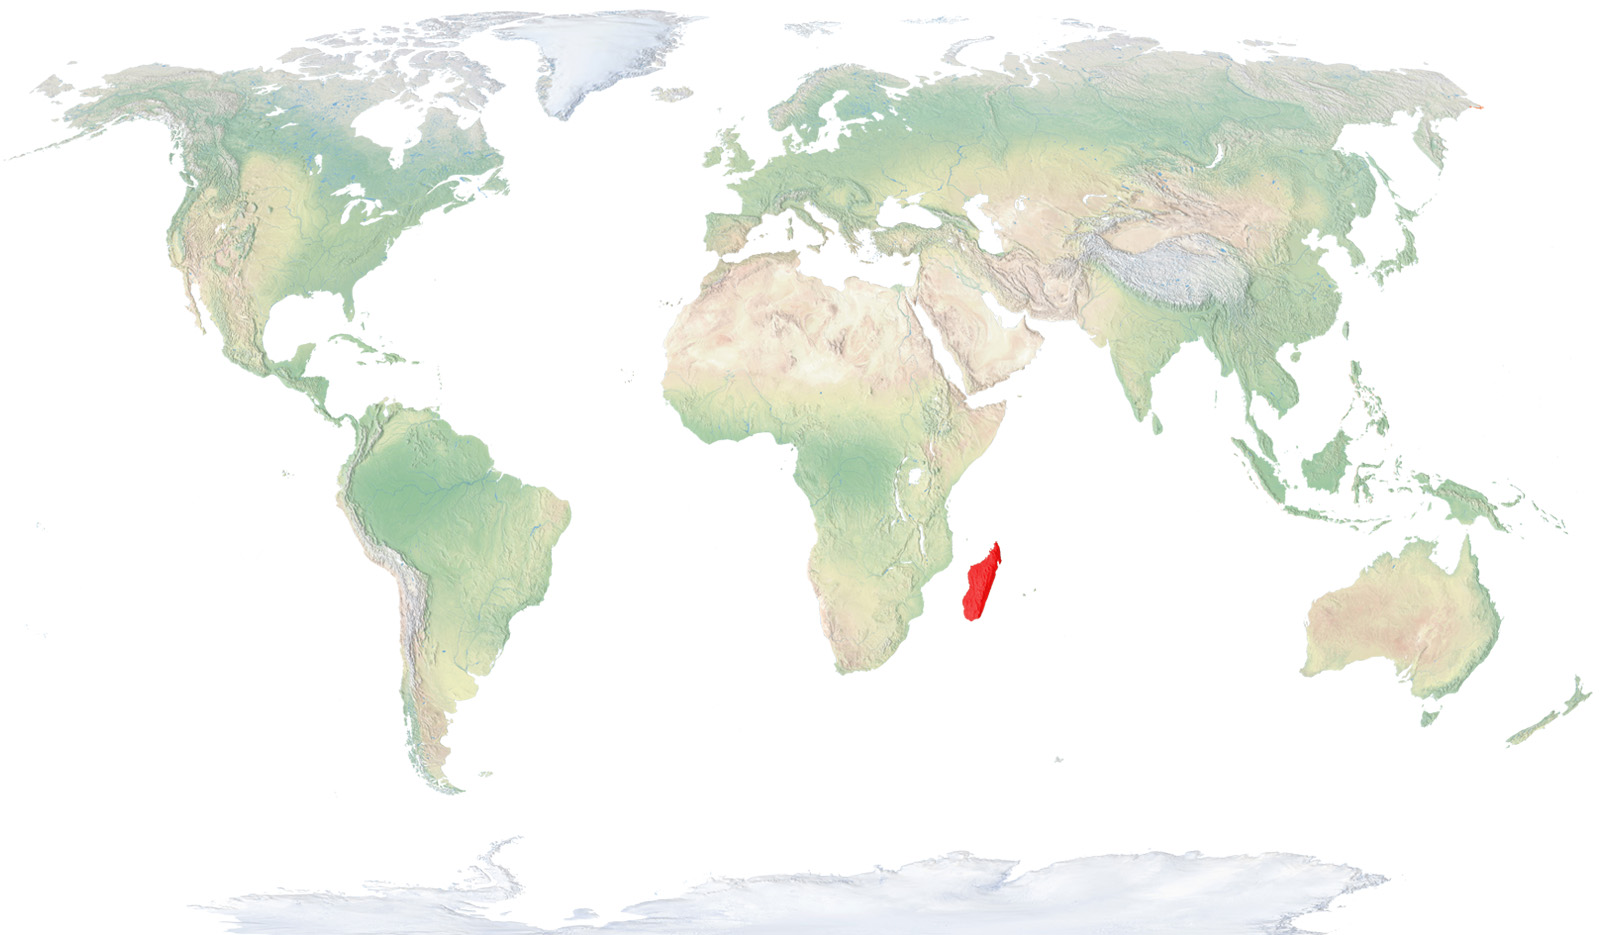 Viu exclusivament a la meitat occidental de l'illa de Madagascar, principalment en regions del centre i el sud properes a la costa. També es troba, probablement introduïda, a l'illa de la Reunió, a l’oceà Índic